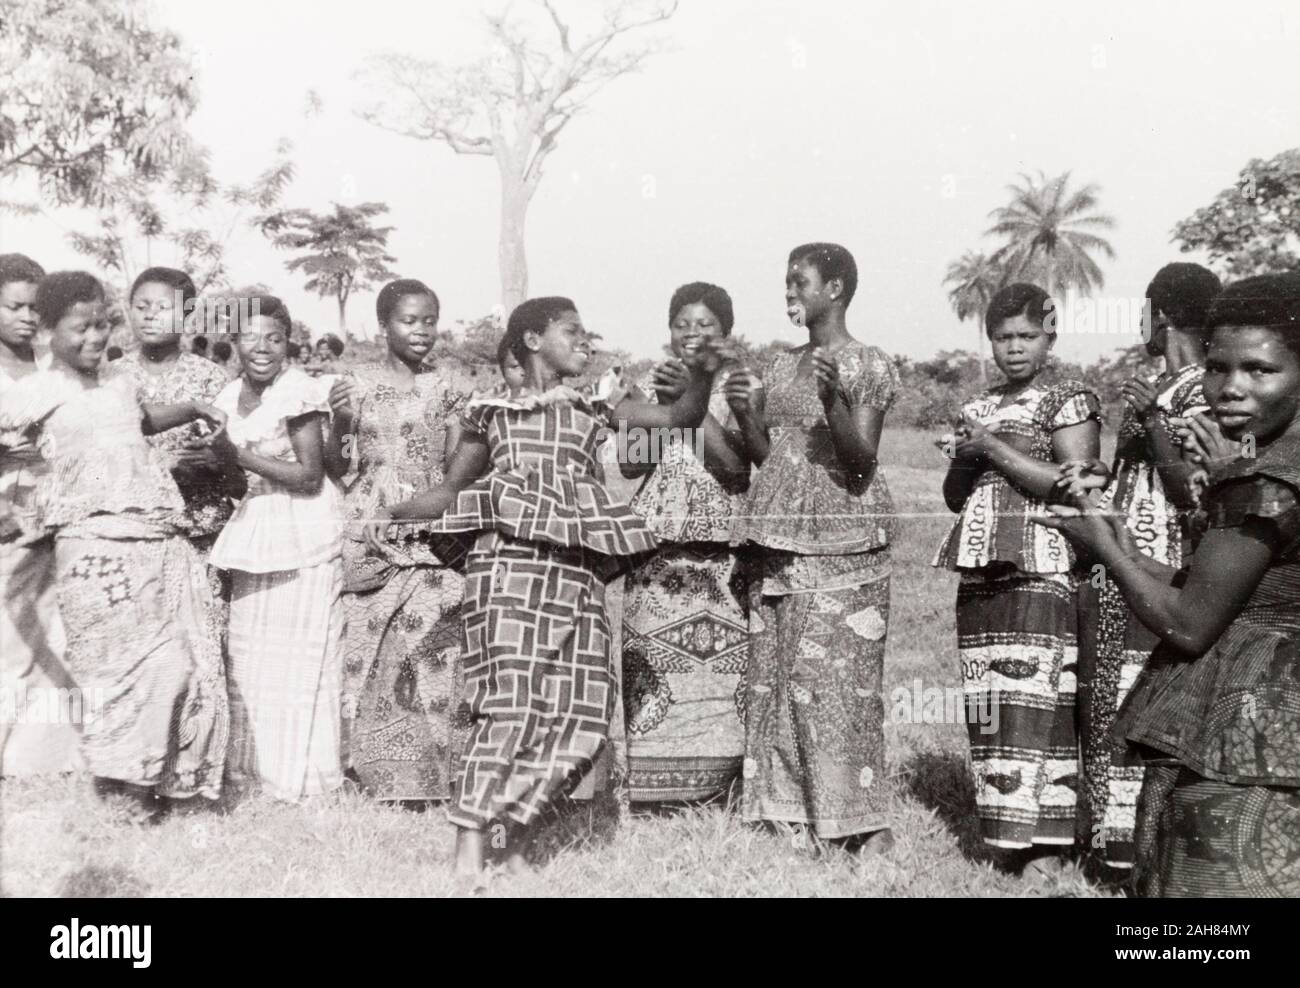 CoastGhana d'or, les étudiantes d'une formation d'enseignants clap et chanter tandis que l'un des groupe exécute un traditionnel Ashanti (Ashanti) la danse. Manuscrit original légende : Enseignants-à-danser, Ashanti, 1951-1952. 1995/076/5/2/2/77. Banque D'Images